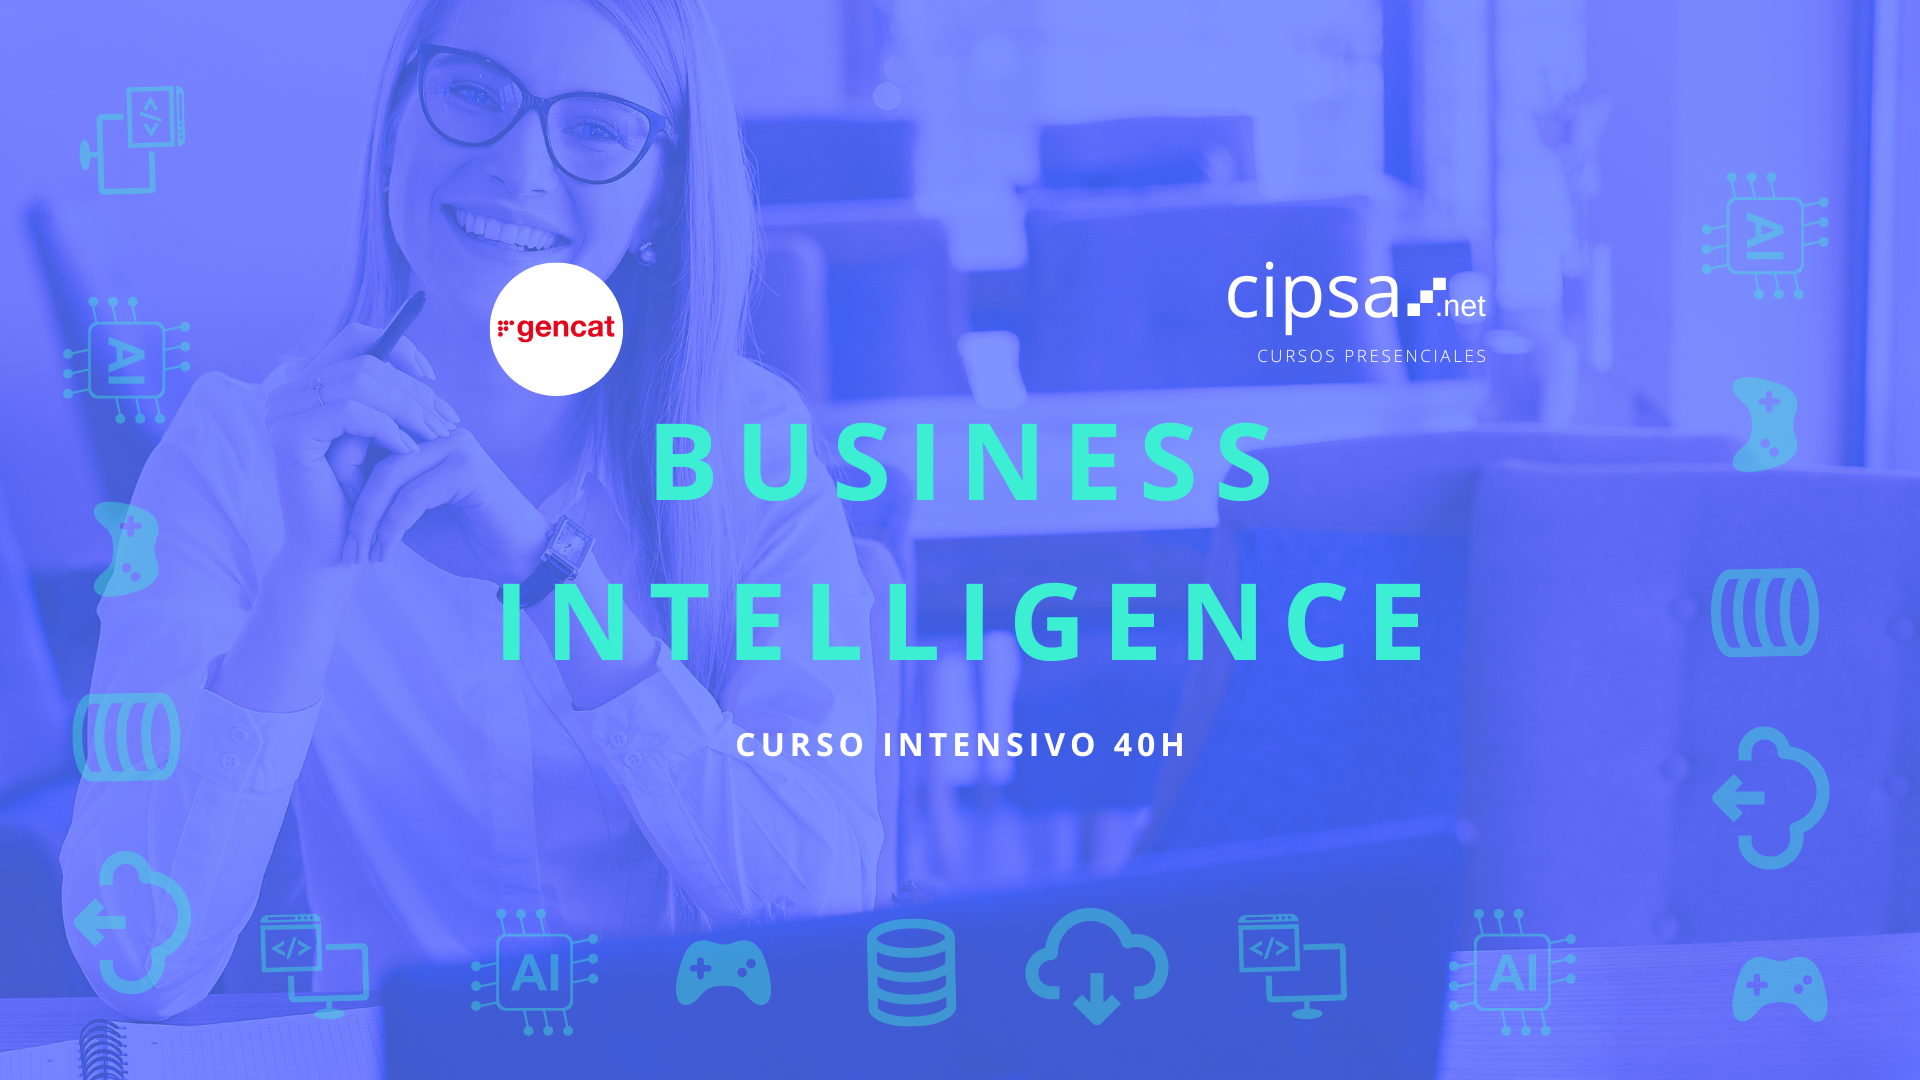 Certificadoprofesional oficial SEPE de nivel 3 de analista de datos, en clave de negocio, para implementar Business Intelligence en todo tipo de proyectos de forma profesional y con enfoque de futuro innovador.